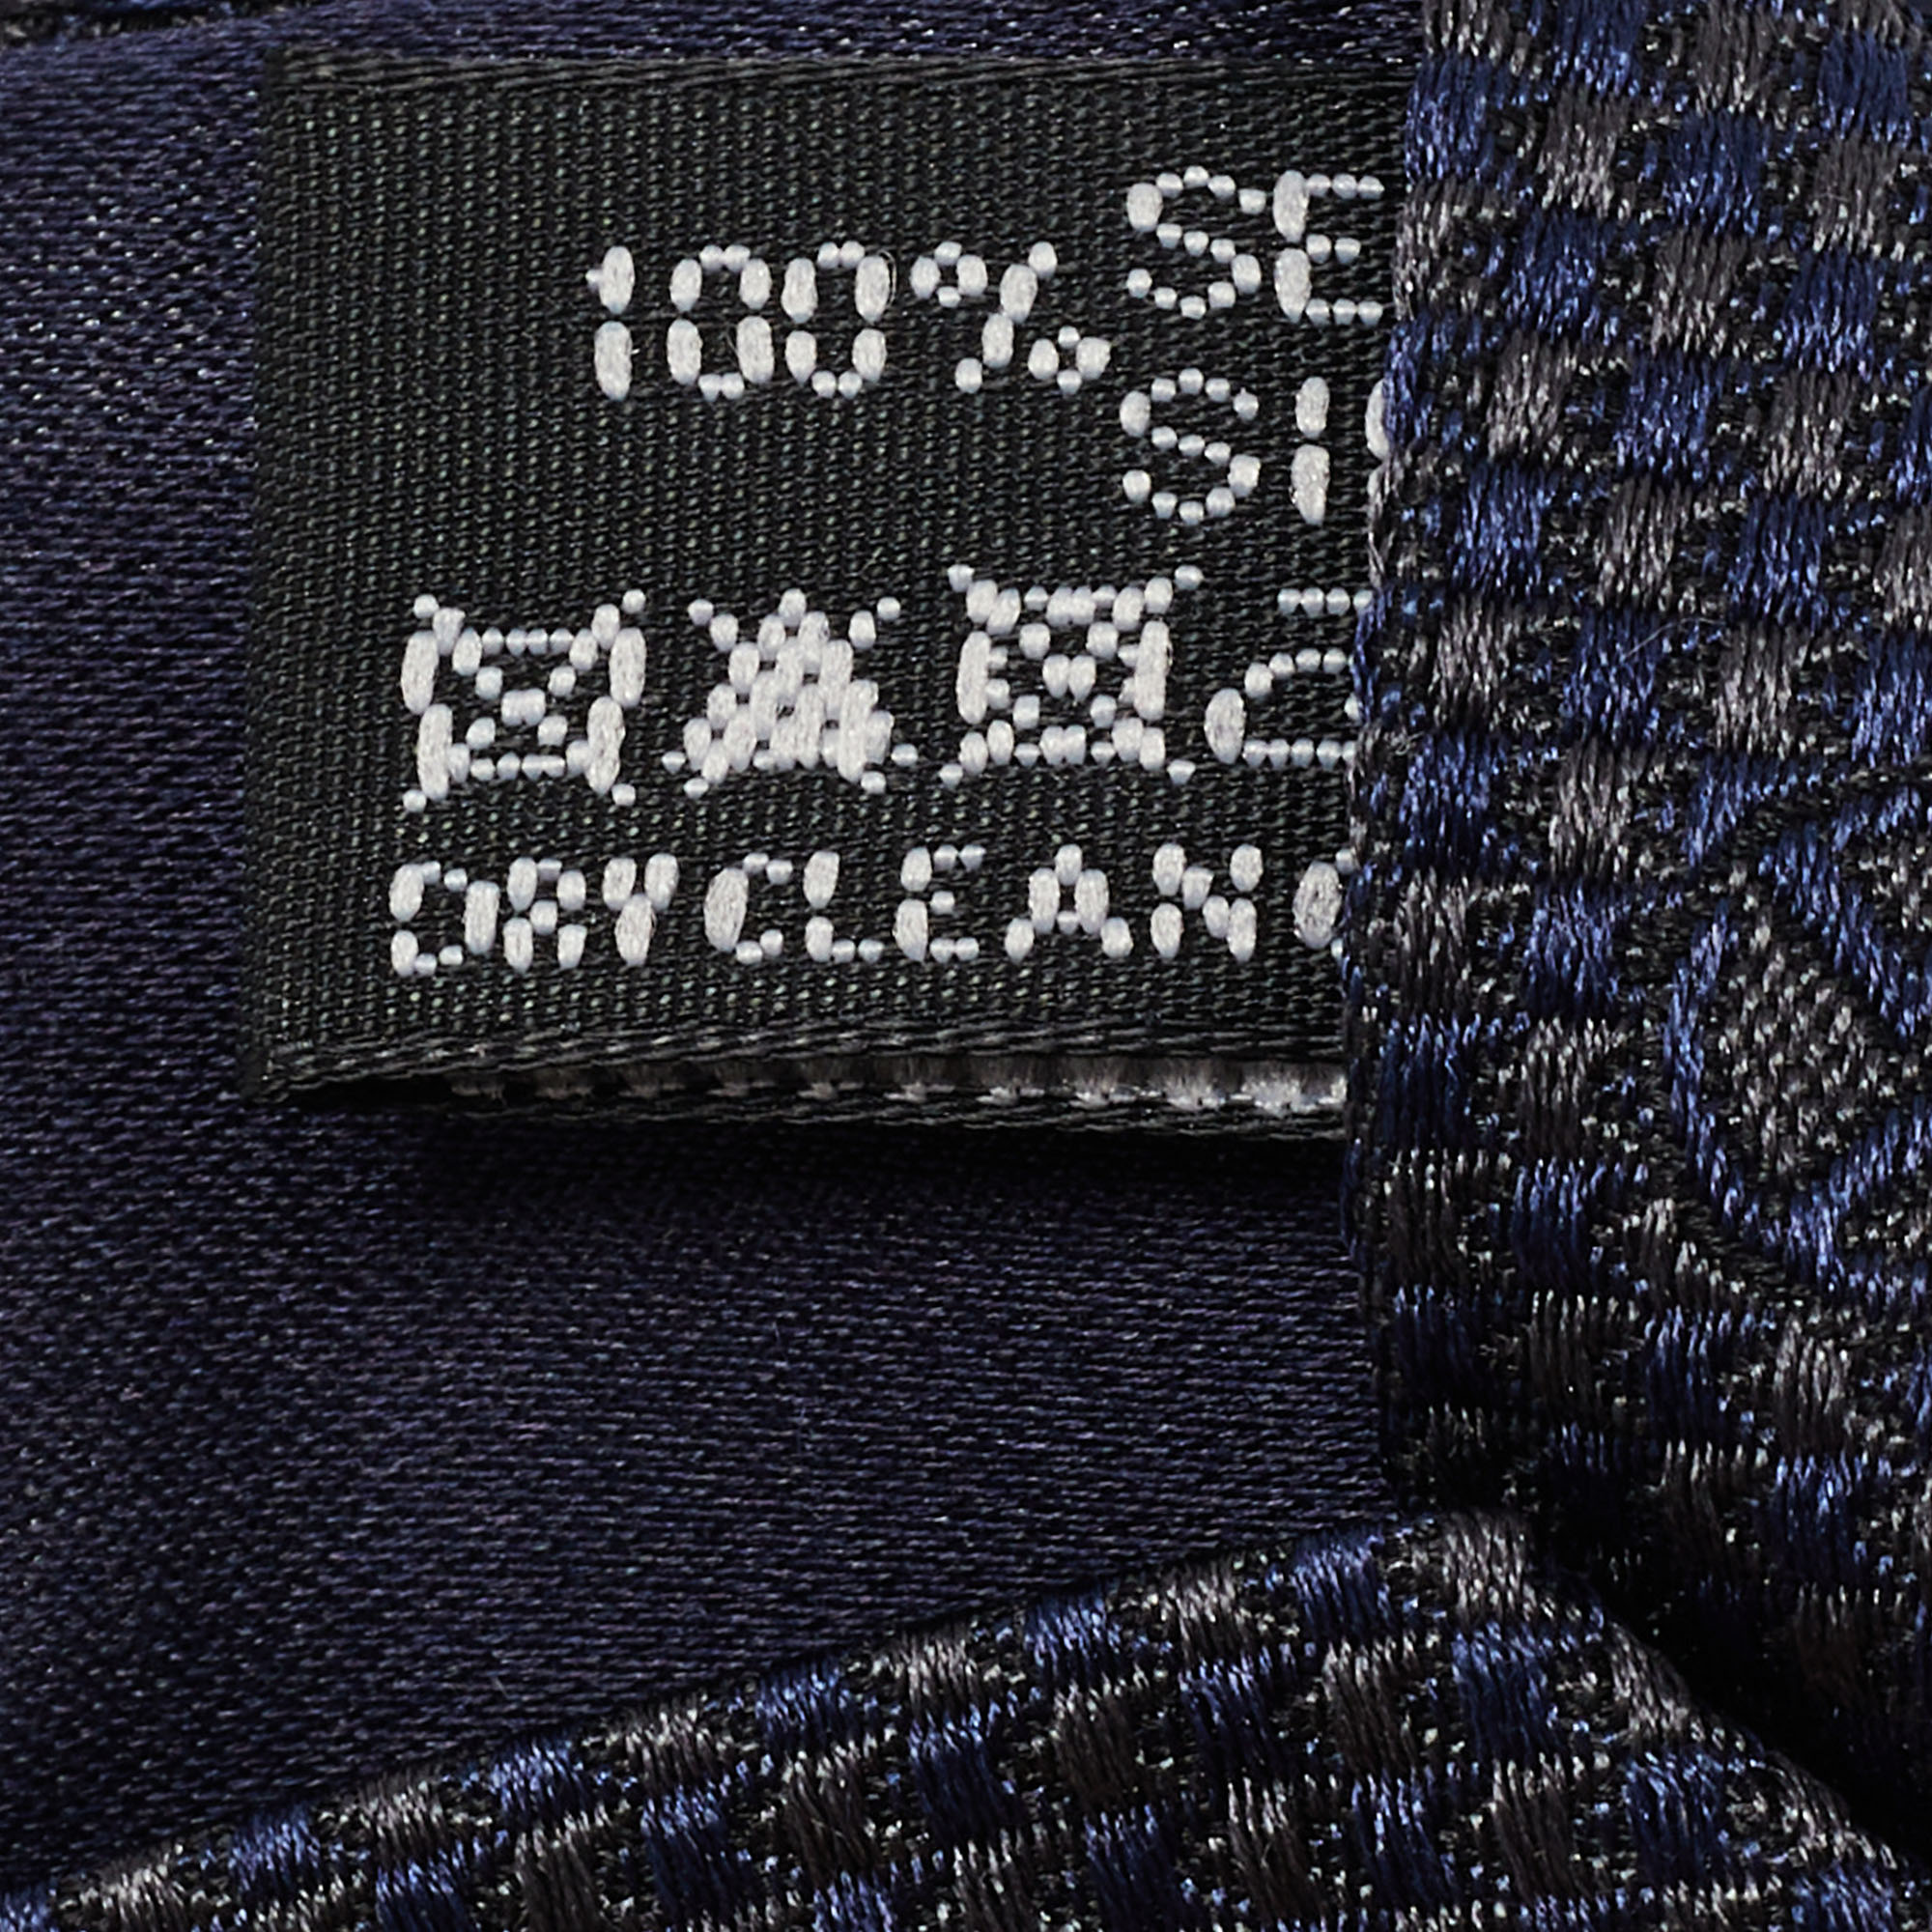 Giorgio Armani Navy Blue Jacquard Silk Tie